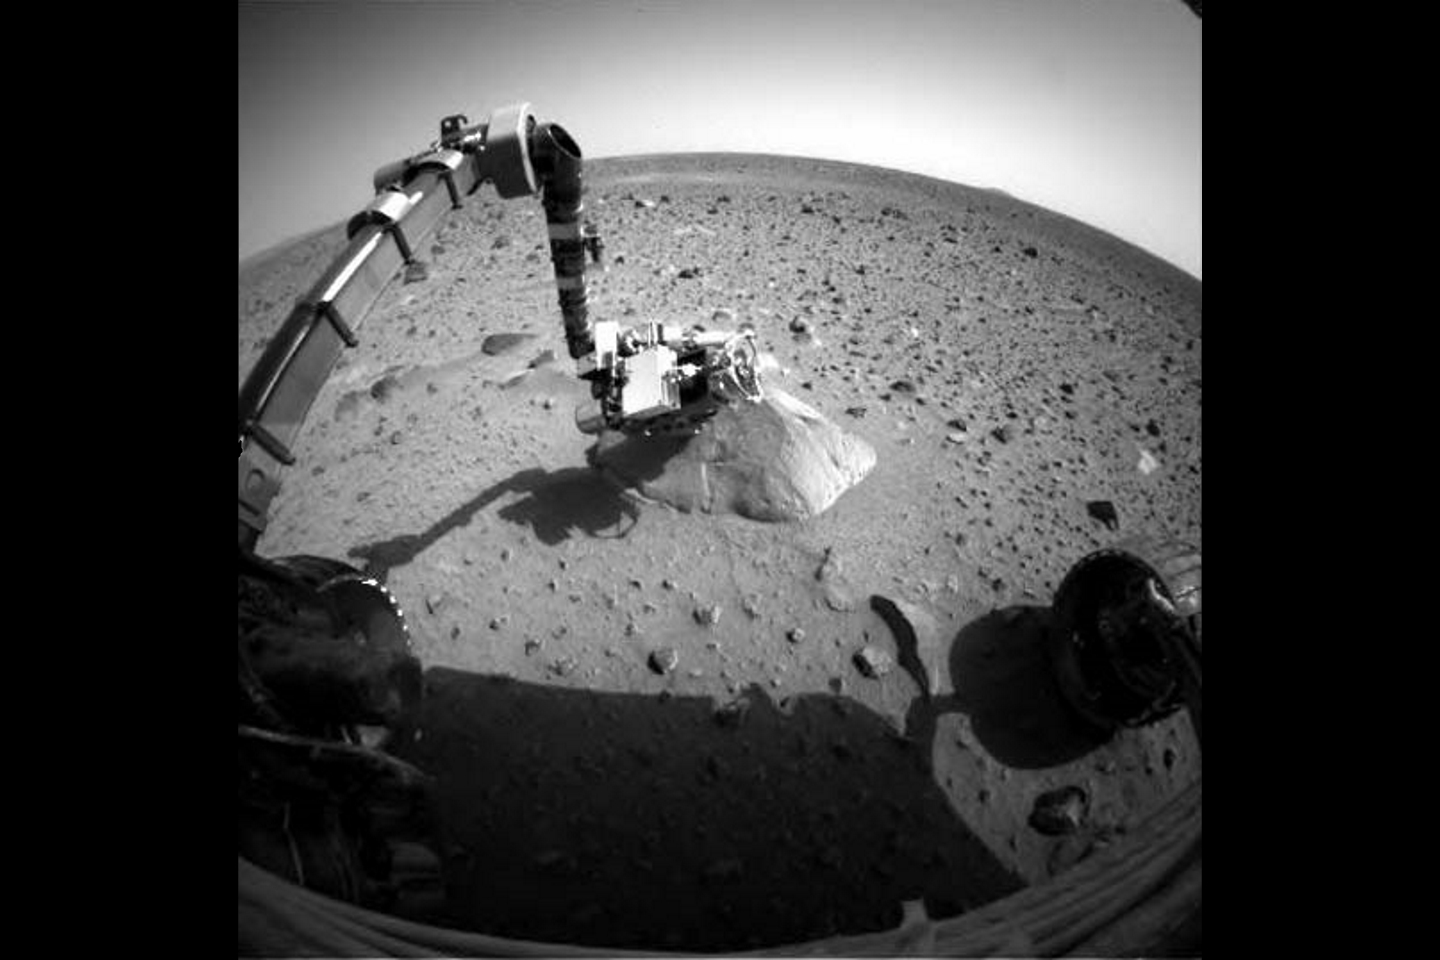 Марсоход Nasa, Mars Rover Spirit, снял первое фото. На нем мы видим роботизированную руку, протянутую к скале под названием Адирондак.